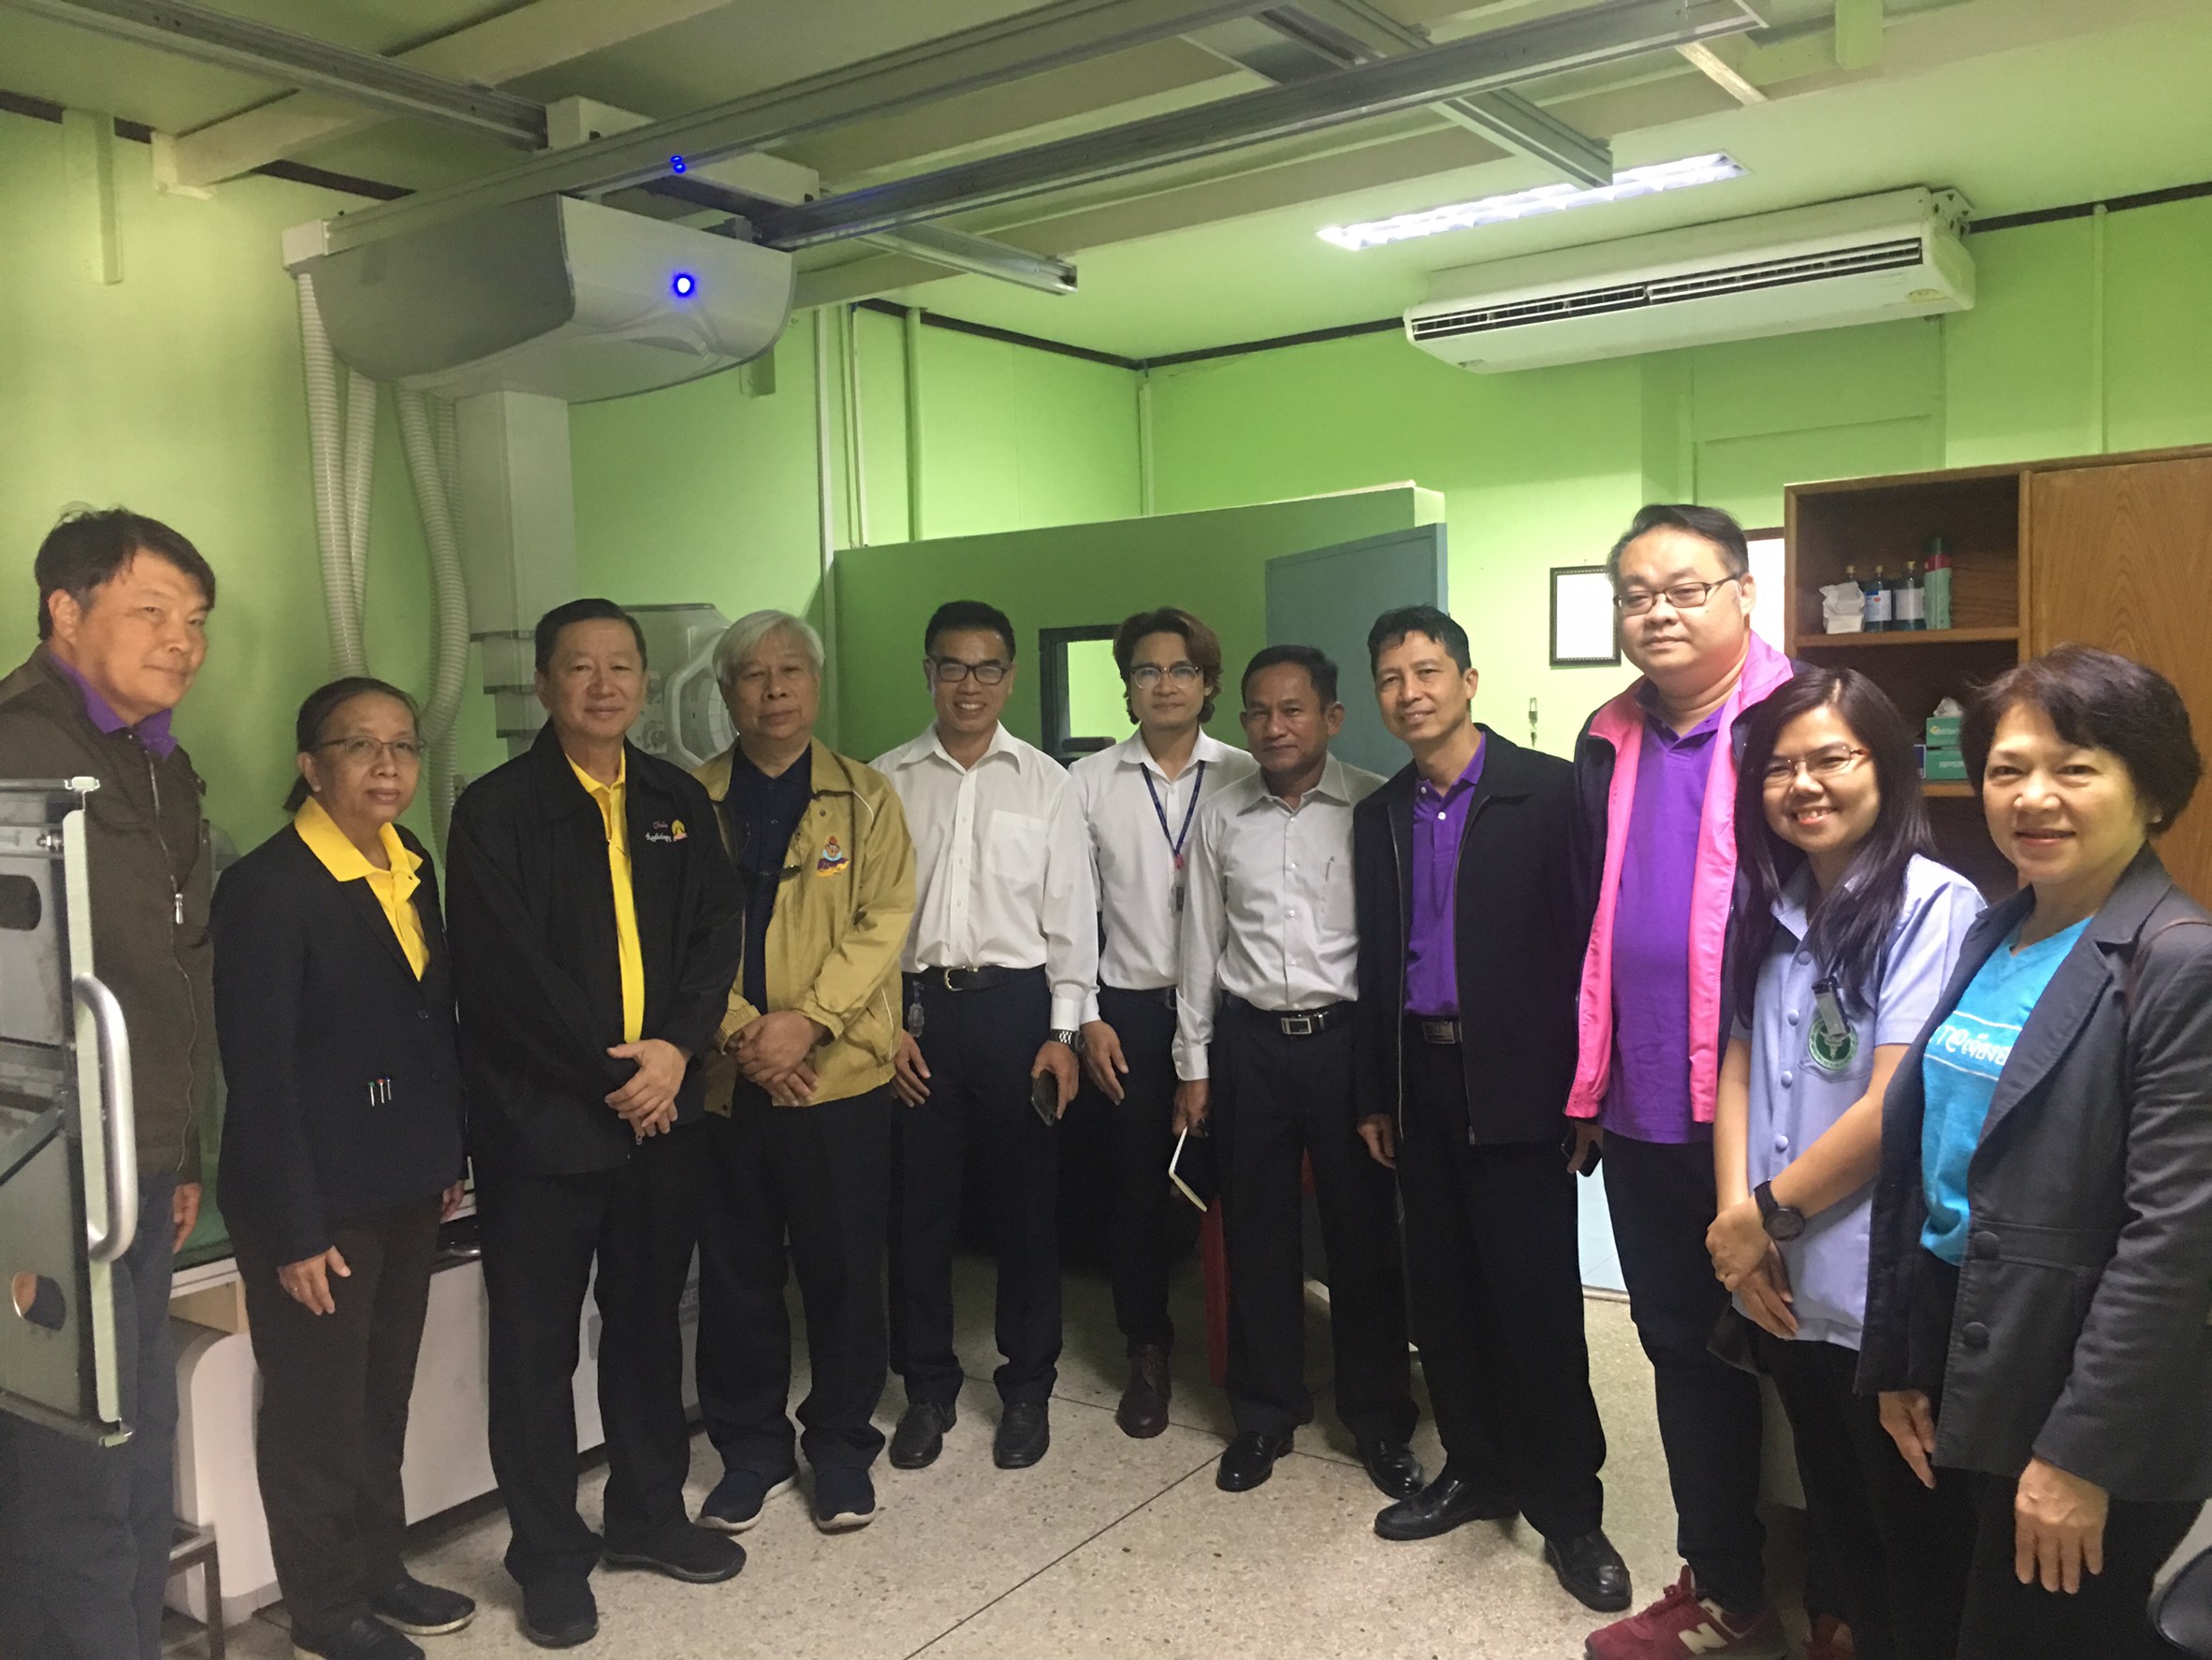 ประชุมวิชาการร่วมกับรังสีการแพทย์แห่งประเทศไทย ครั้งที่17 27-29 พ.ย. - พร้อมเข้าเยี่ยมและให้กำลังใจหน่วยงานรังสีวิทยาในพื้นที่จังหวัดอุบลราชธานีระหว่างวันที่ 25-26 พฤศจิกายน 2562 82